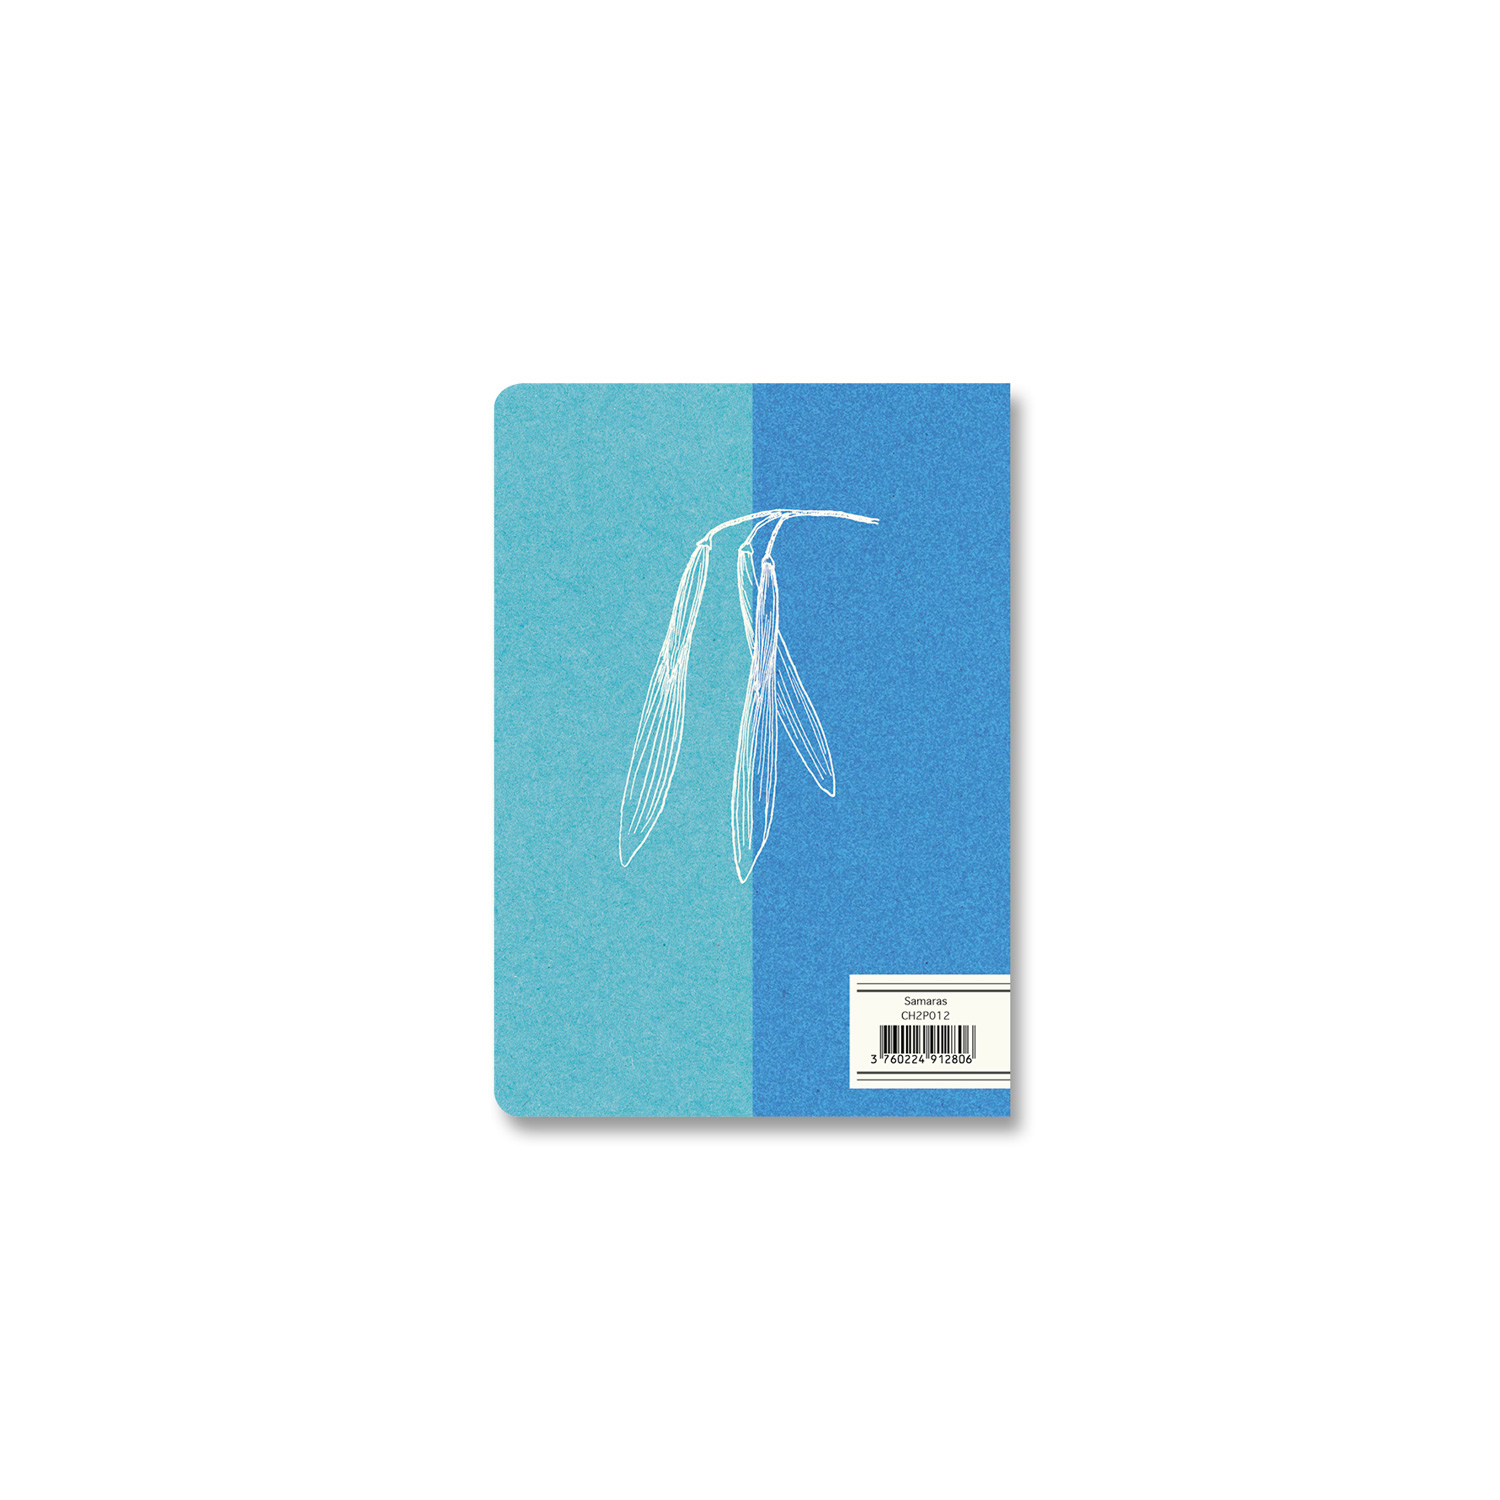 Heft " Samaras", 12 x 17 cm, 64 Seiten von Alibabette-Editions 